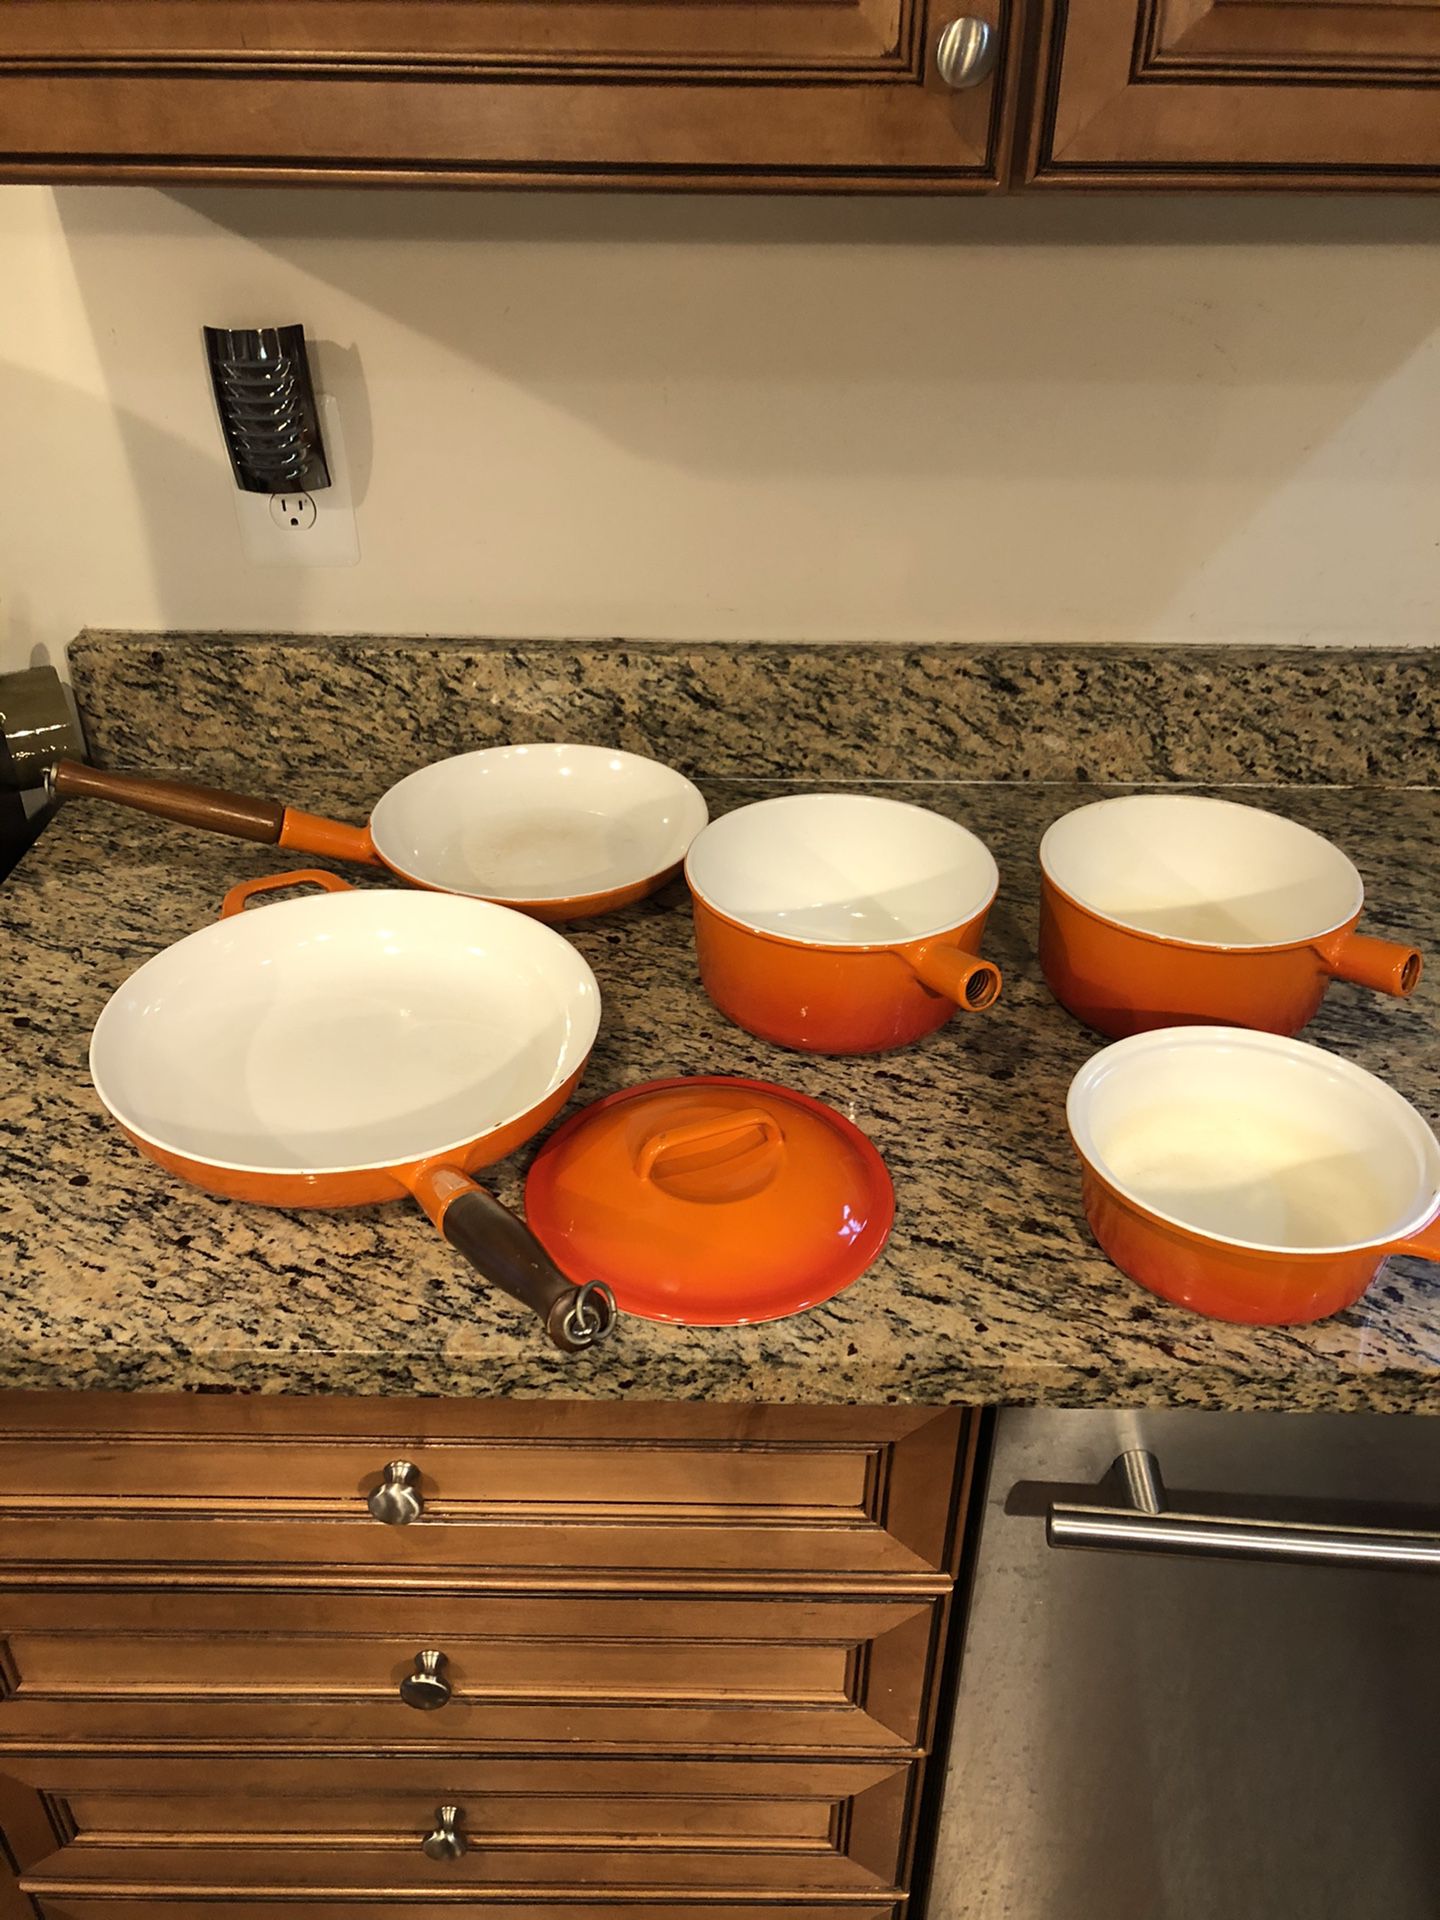 Cast-iron enamel pots and pans